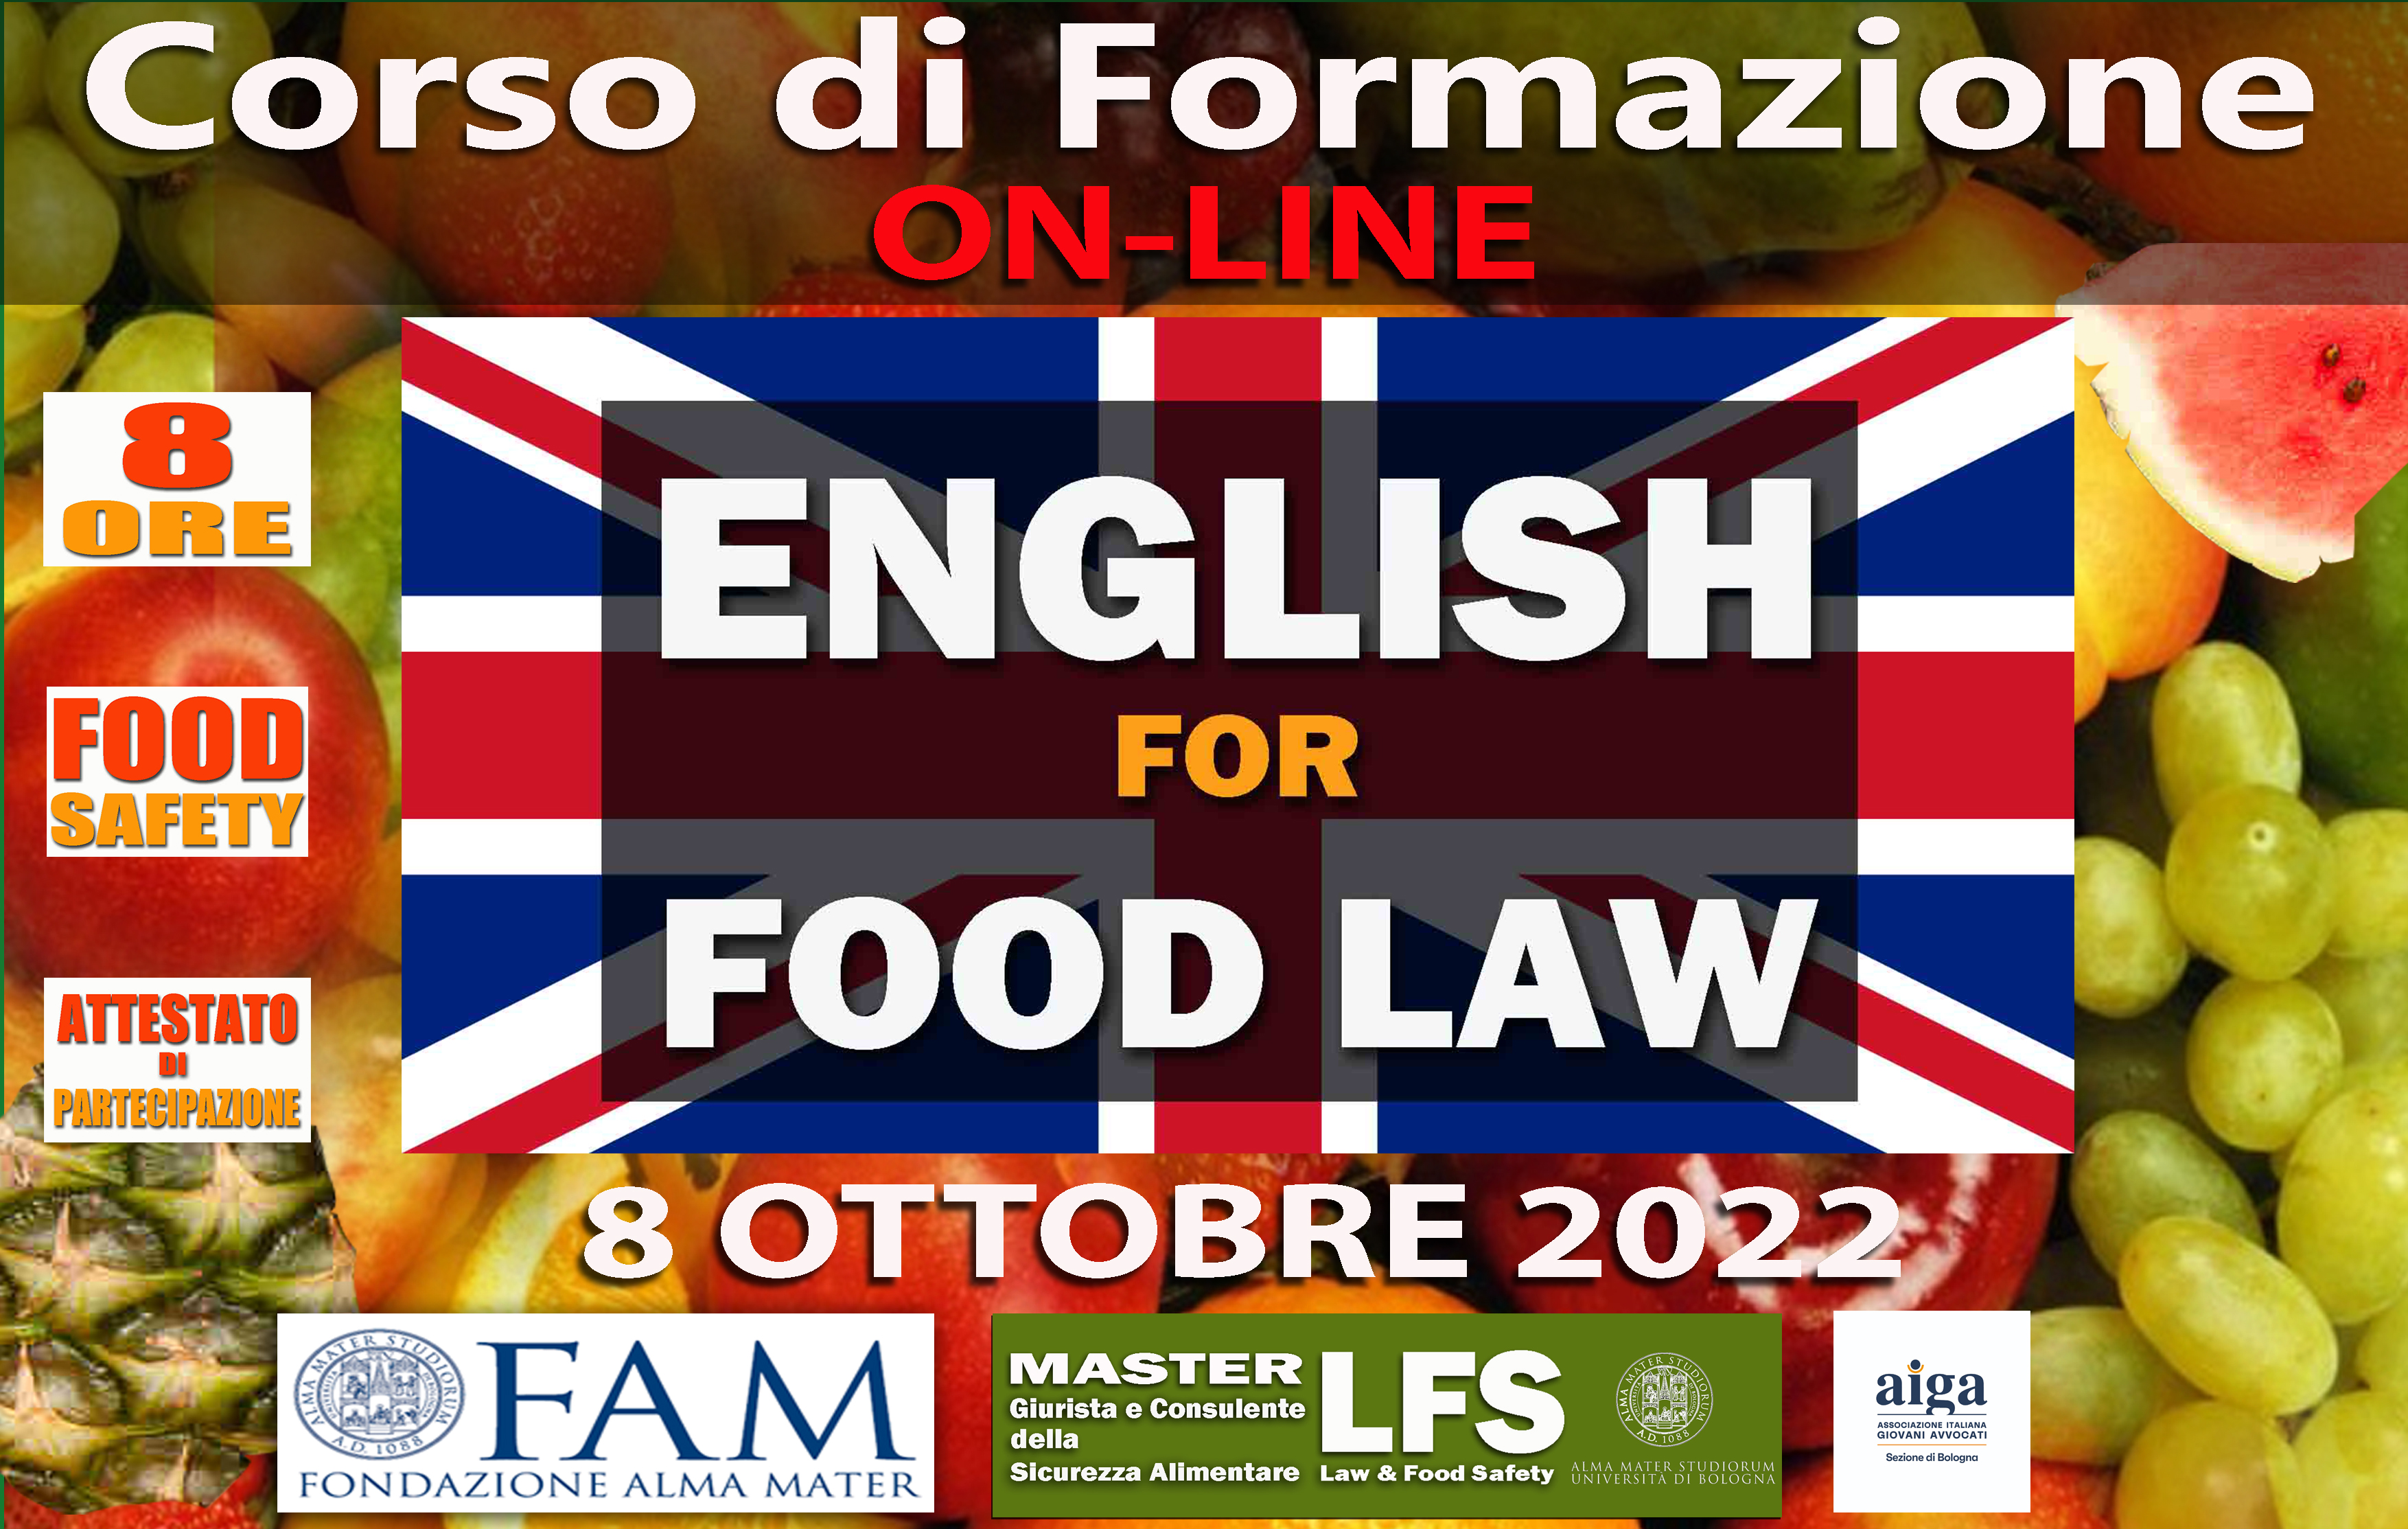 CORSO DI FORMAZIONE ENGLISH FOR FOOD LAW - 8 OTTOBRE 2022 